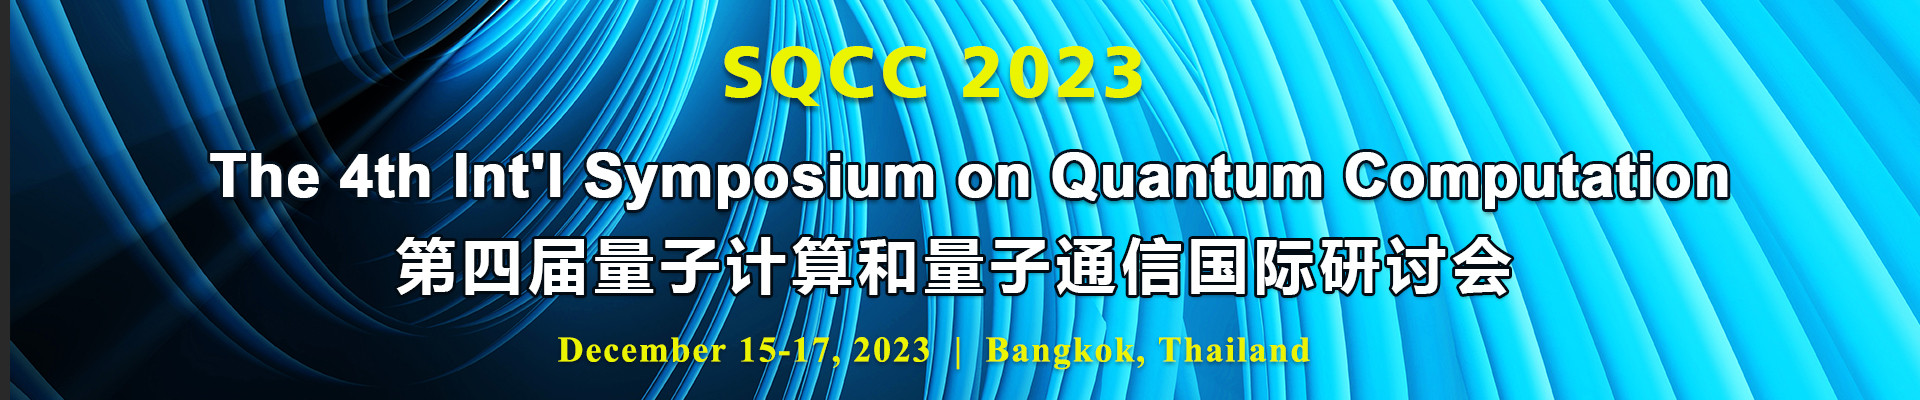 第四届量子计算和量子通信国际研讨会(SQCC 2023)